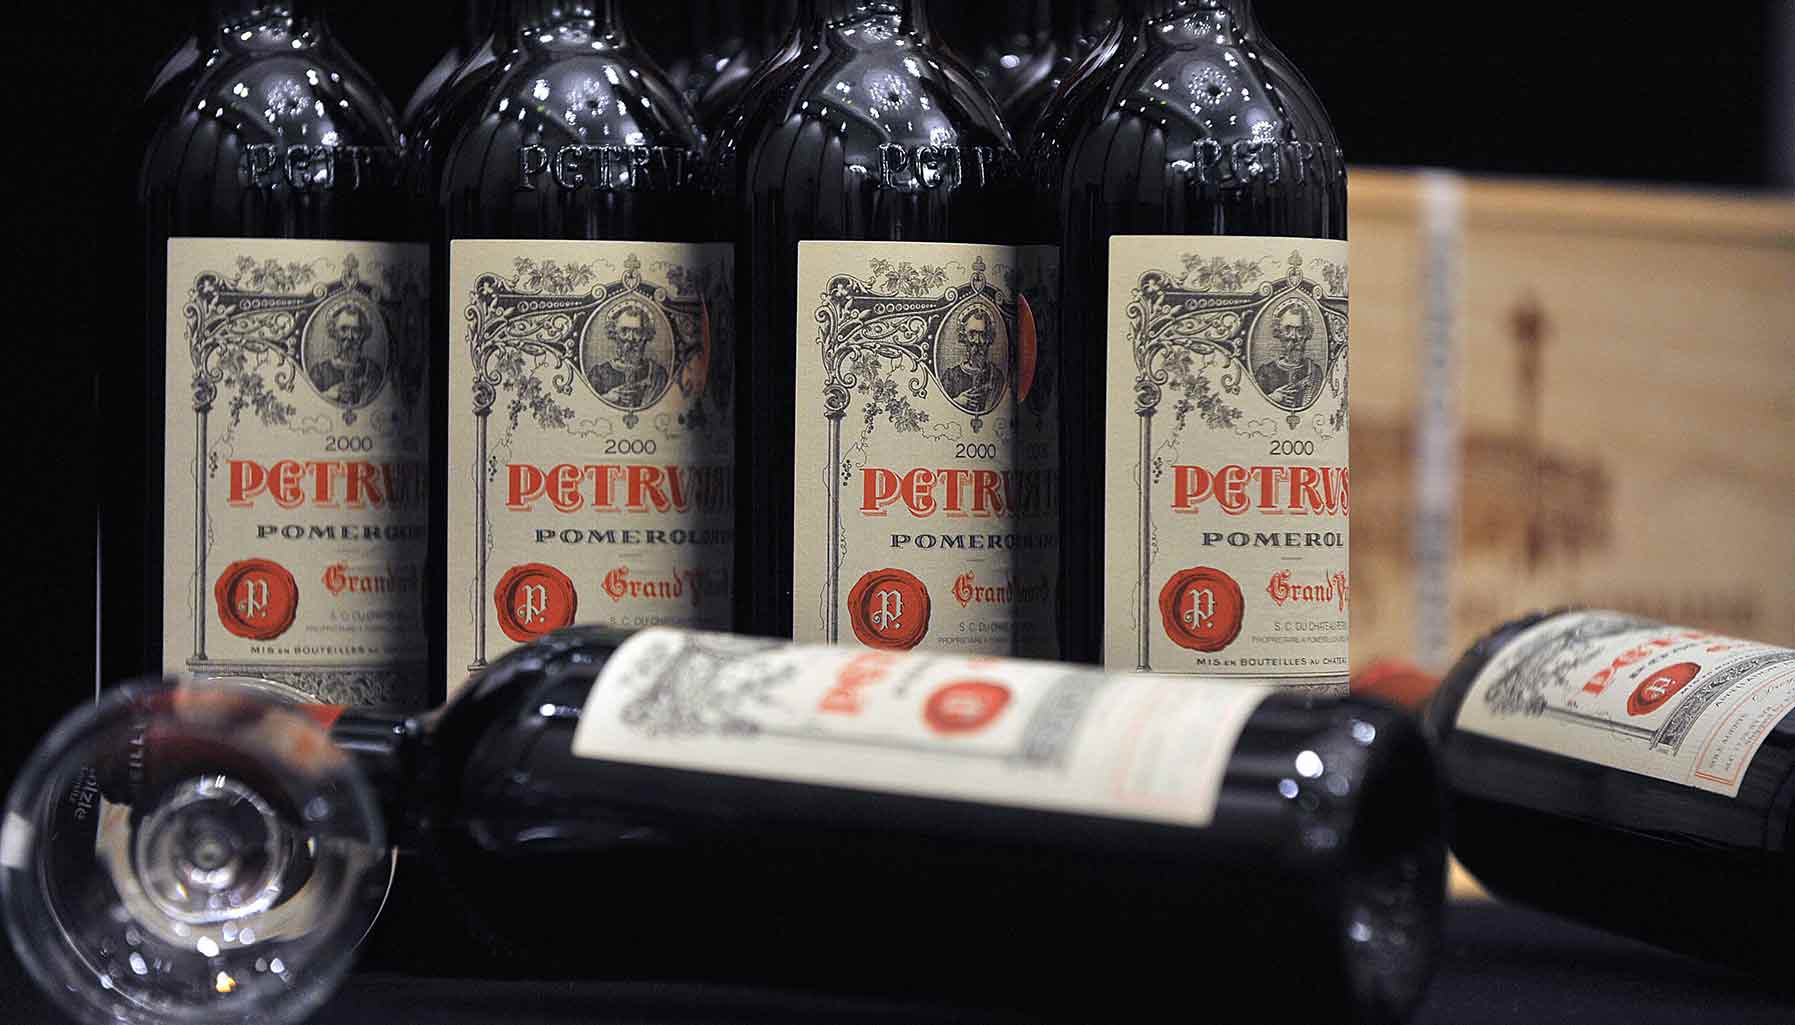 Petrus wine